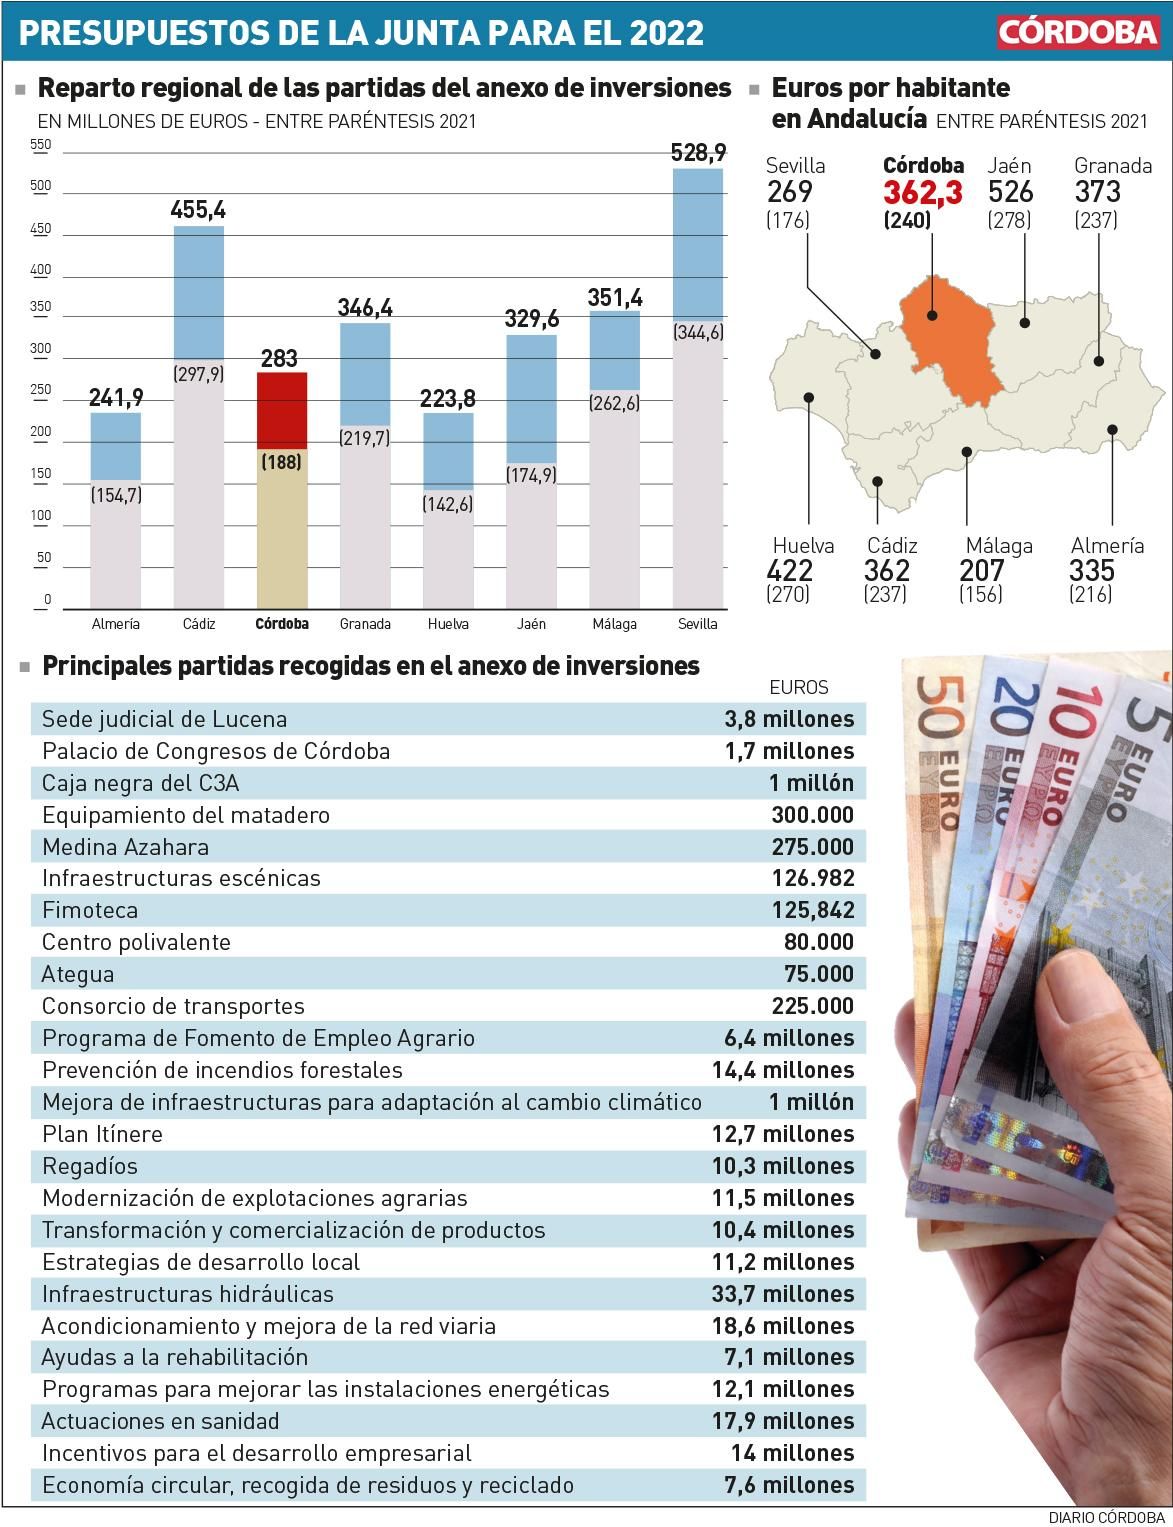 Presupuestos de la Junta de Andalucía para el 2022.